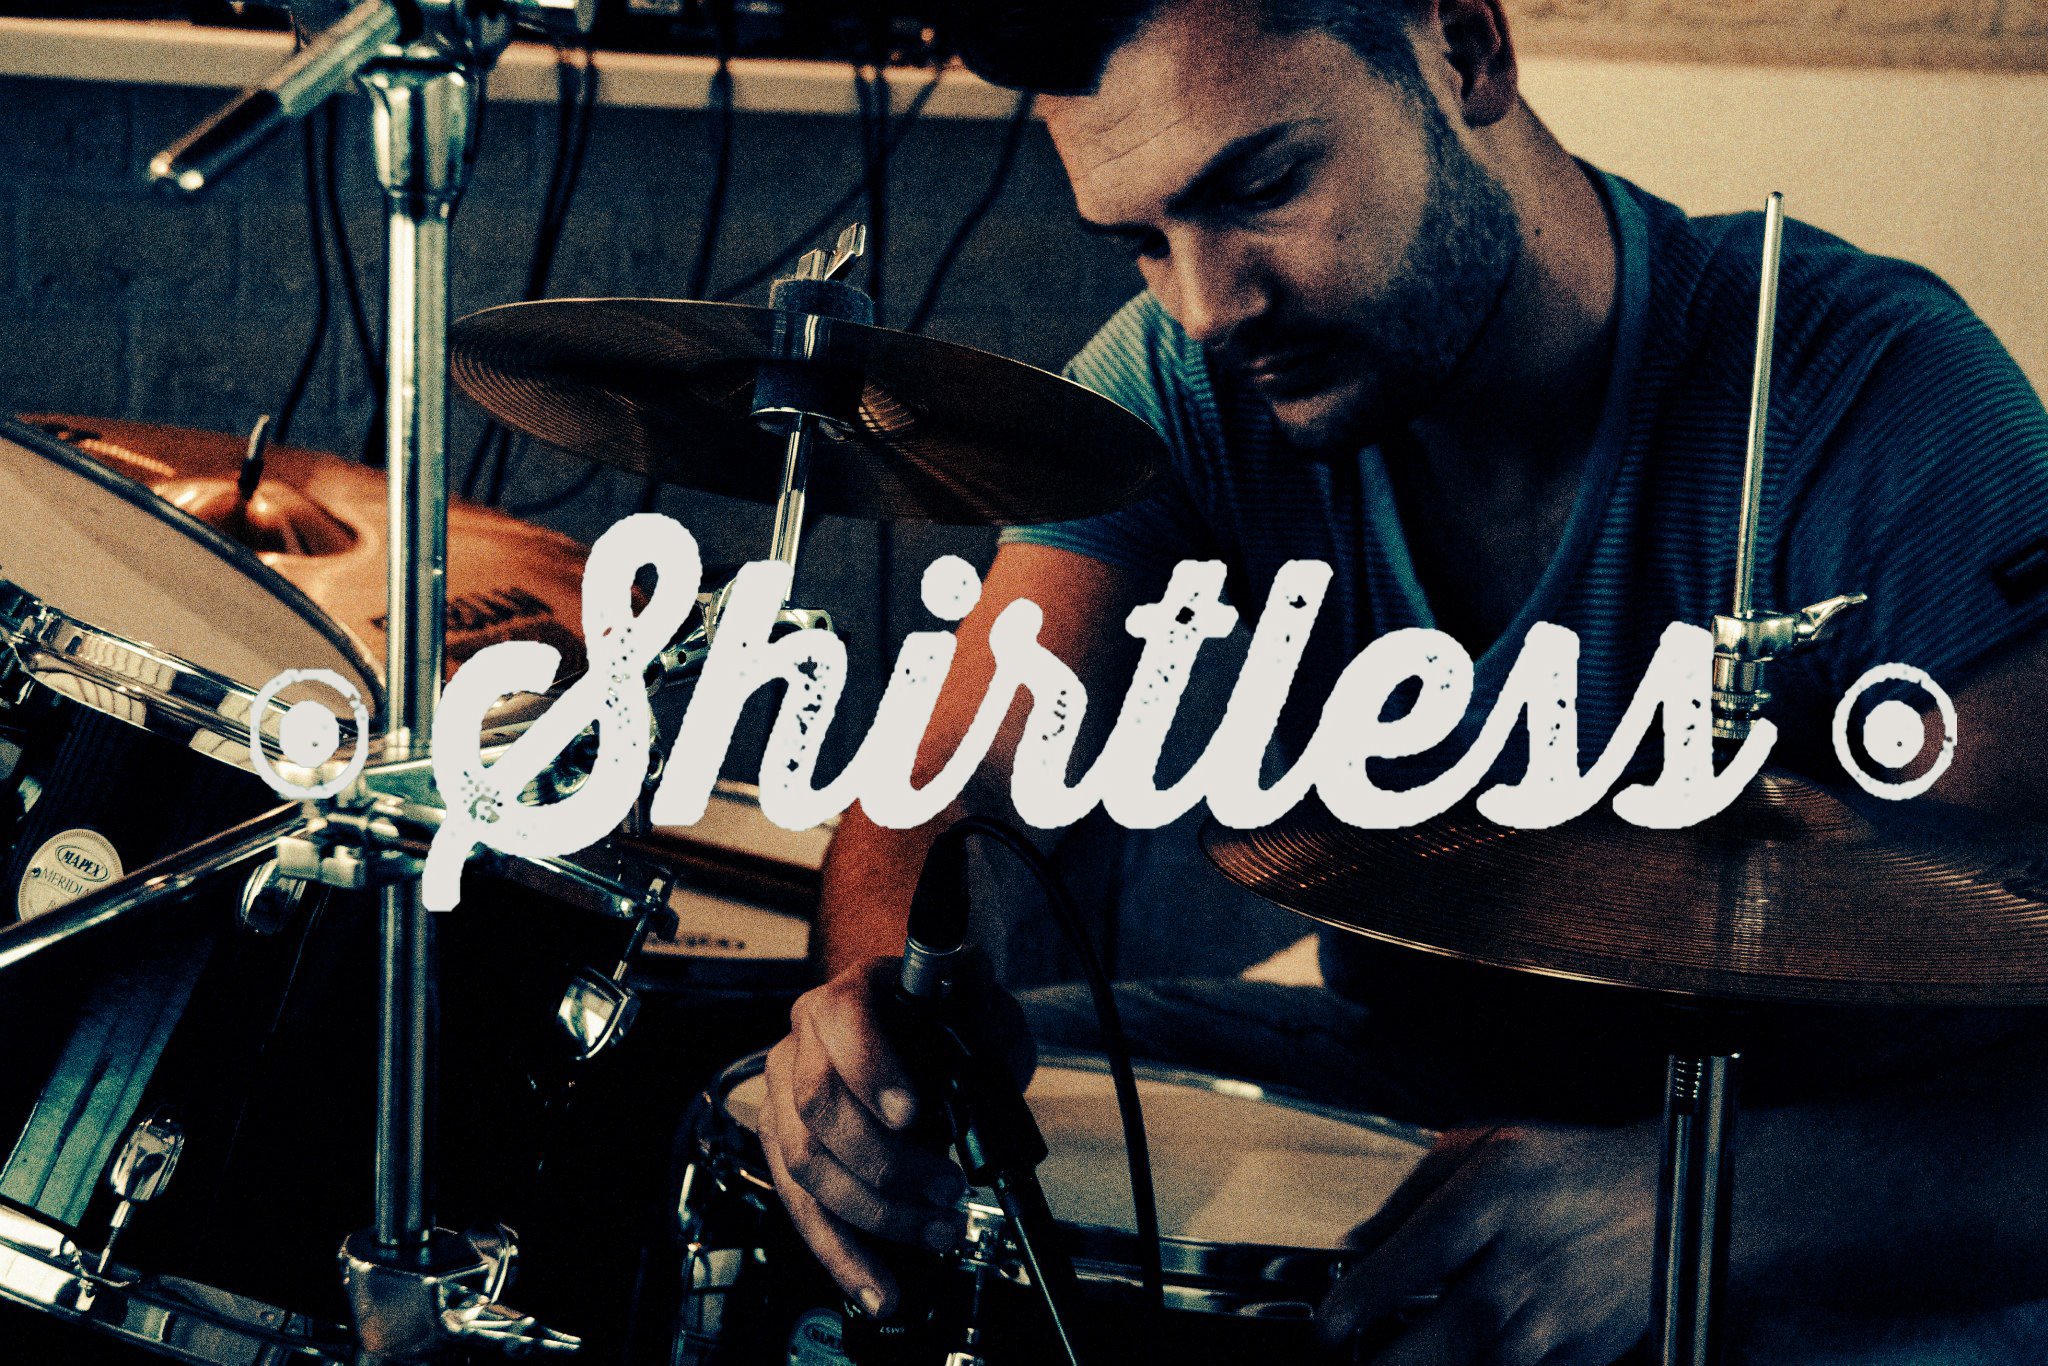 Shirtless